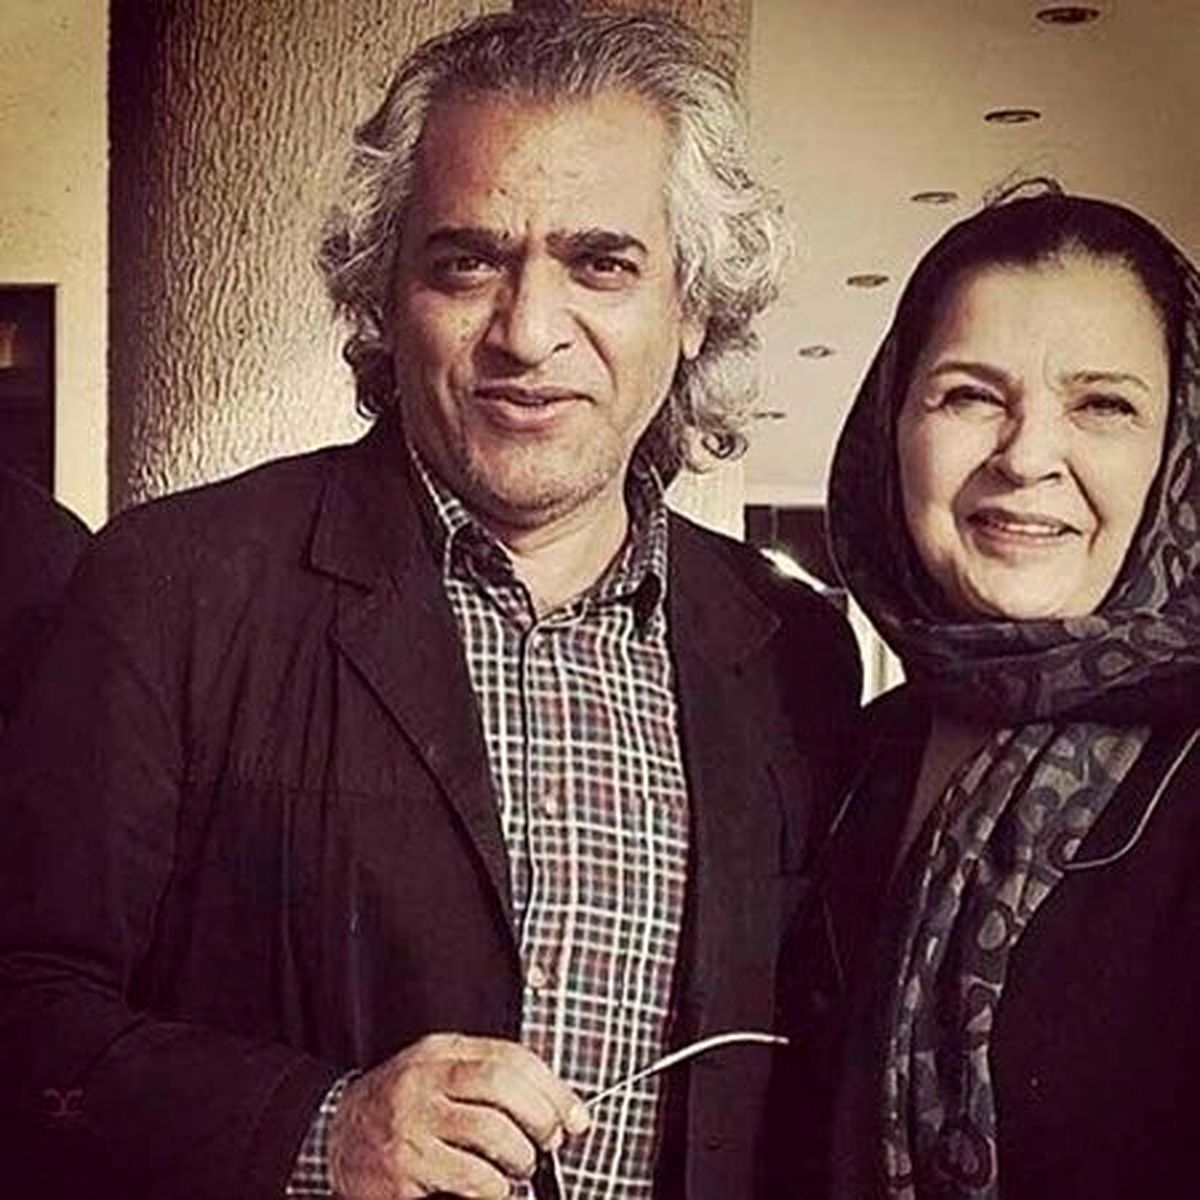 ستاره زن سینمای ایران پارکینسون گرفت | روایت تلخ از افسر اسدی و همسرش اصغر همت